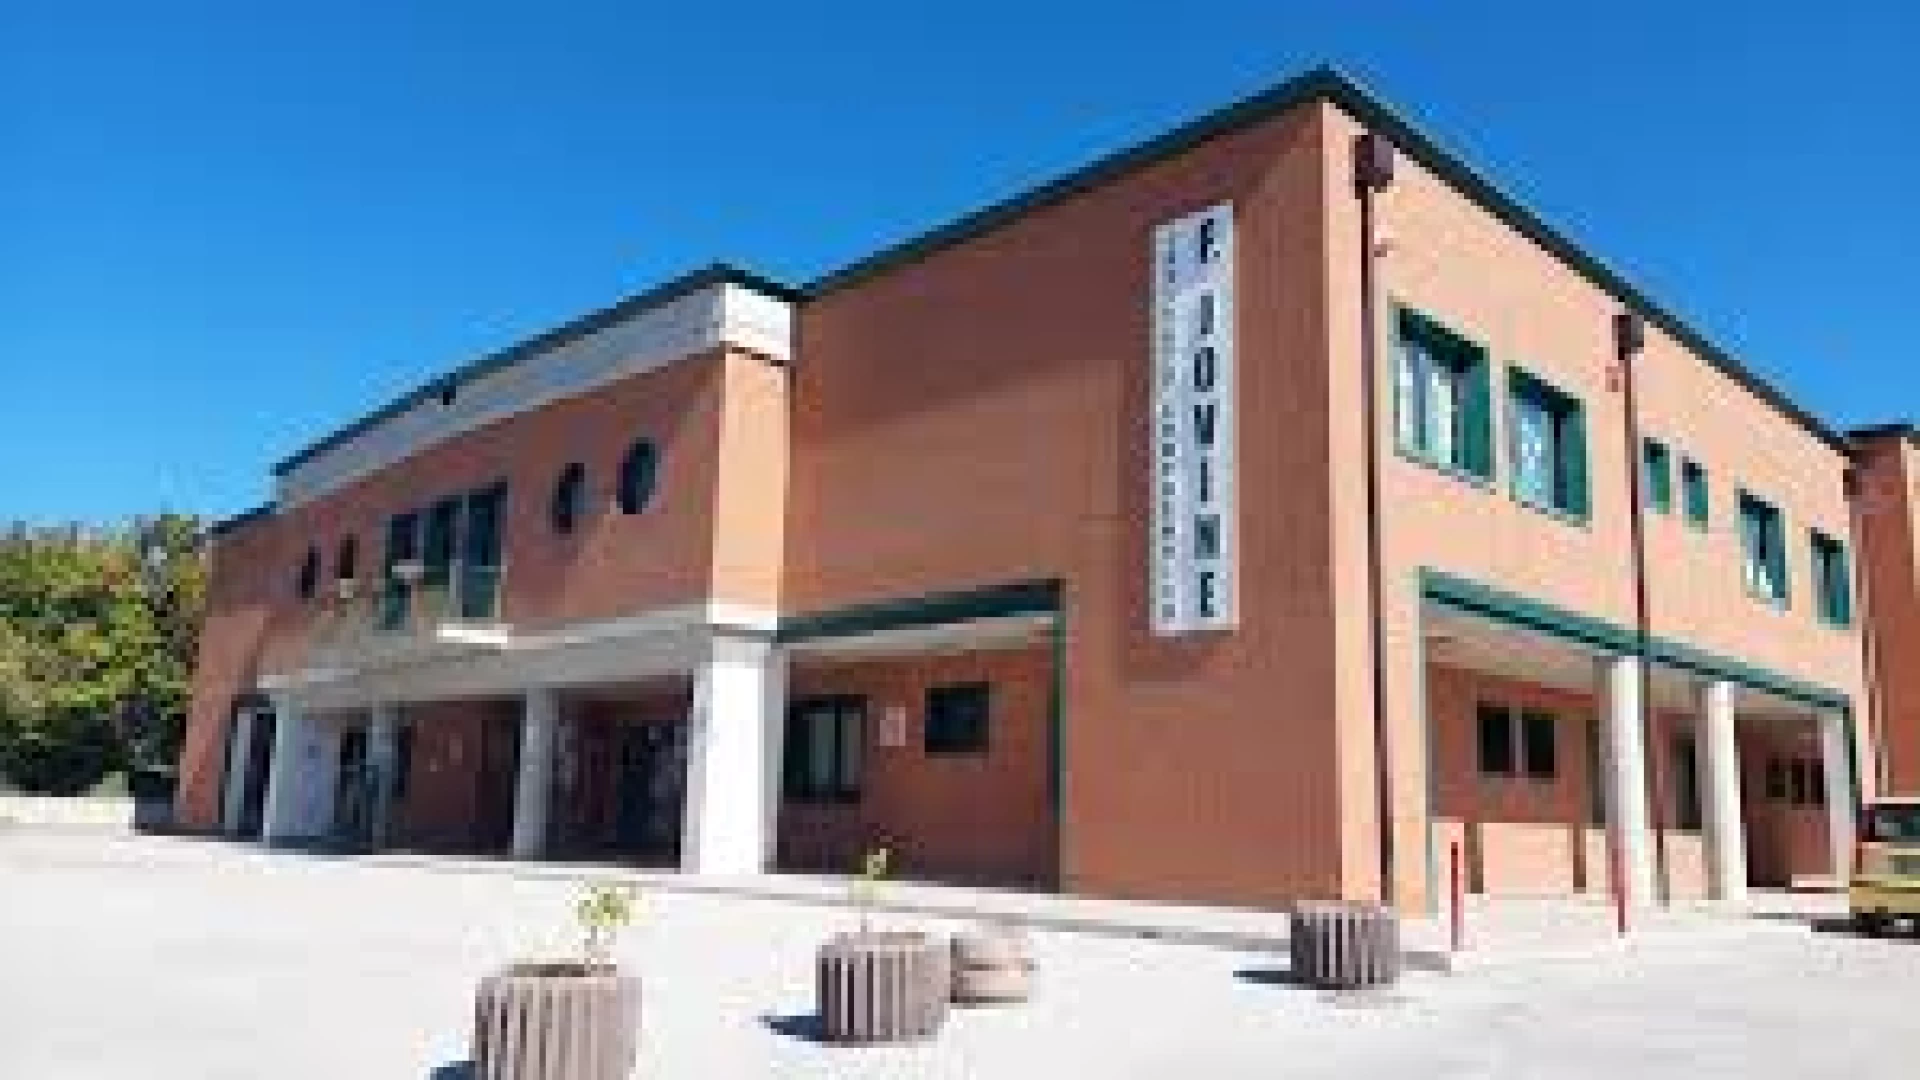 Istituto Comprensivo Jovine di Campobaso, l'autonomia resta confermata. La nota dell'Ufficio scolastico regionale del Molise.